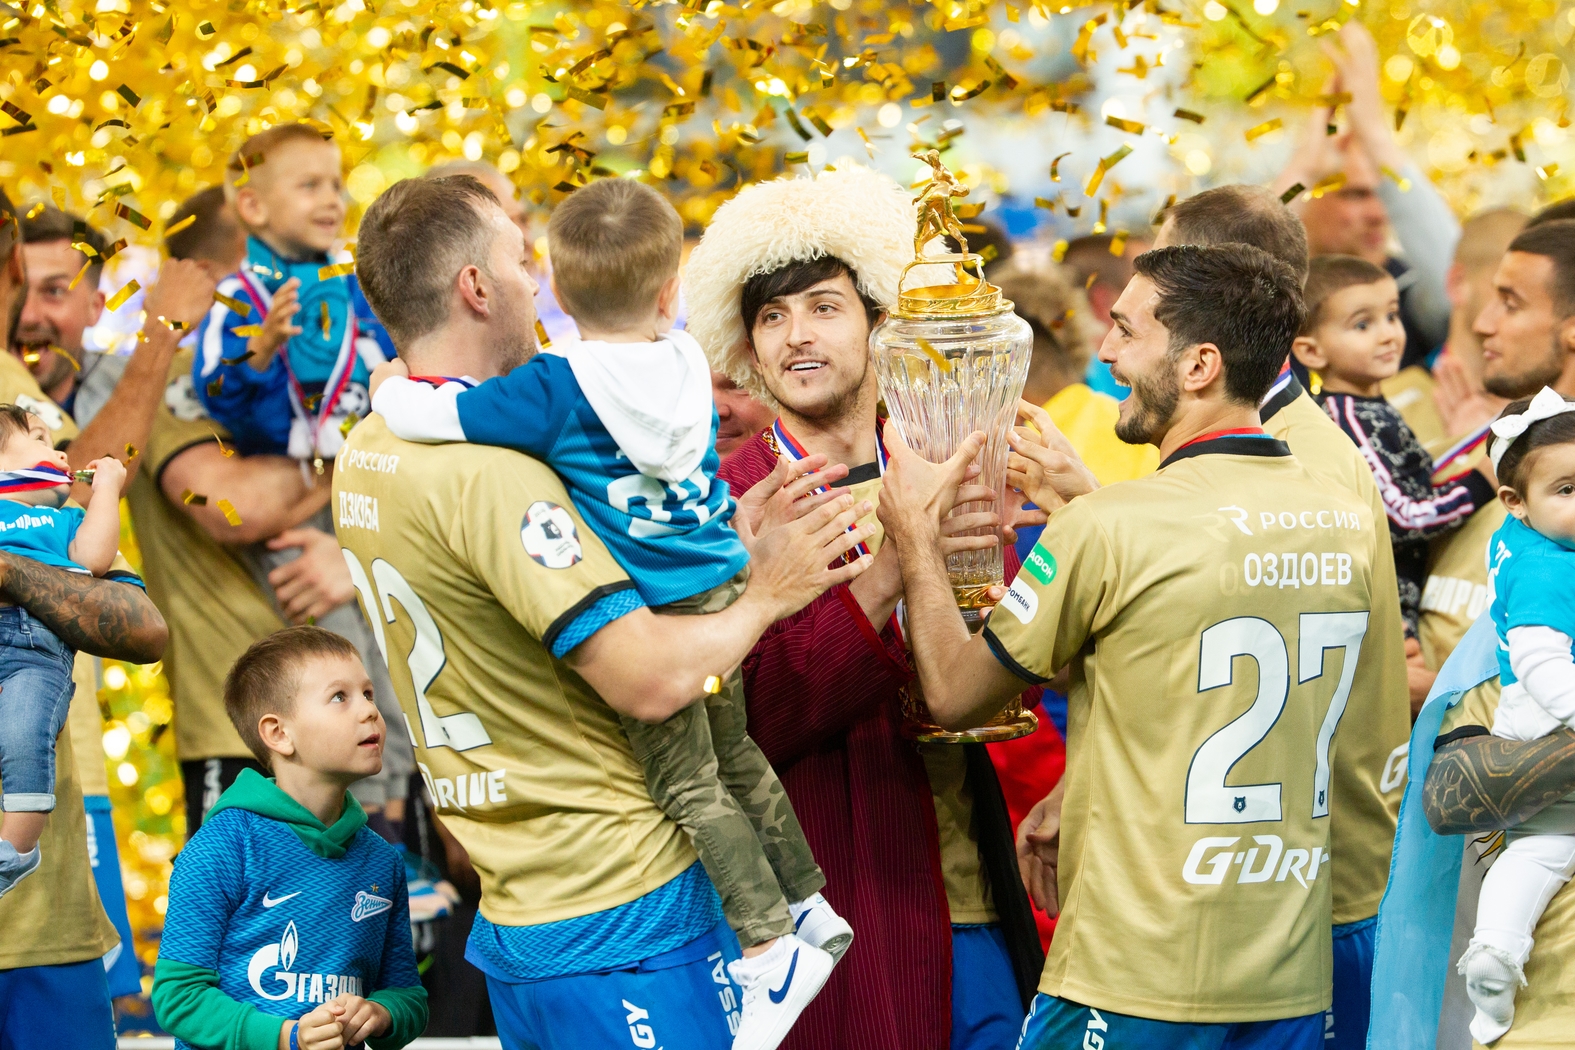 Сердар Азмун вышел на вручение кубка чемпиона России в туркменском национальном костюме